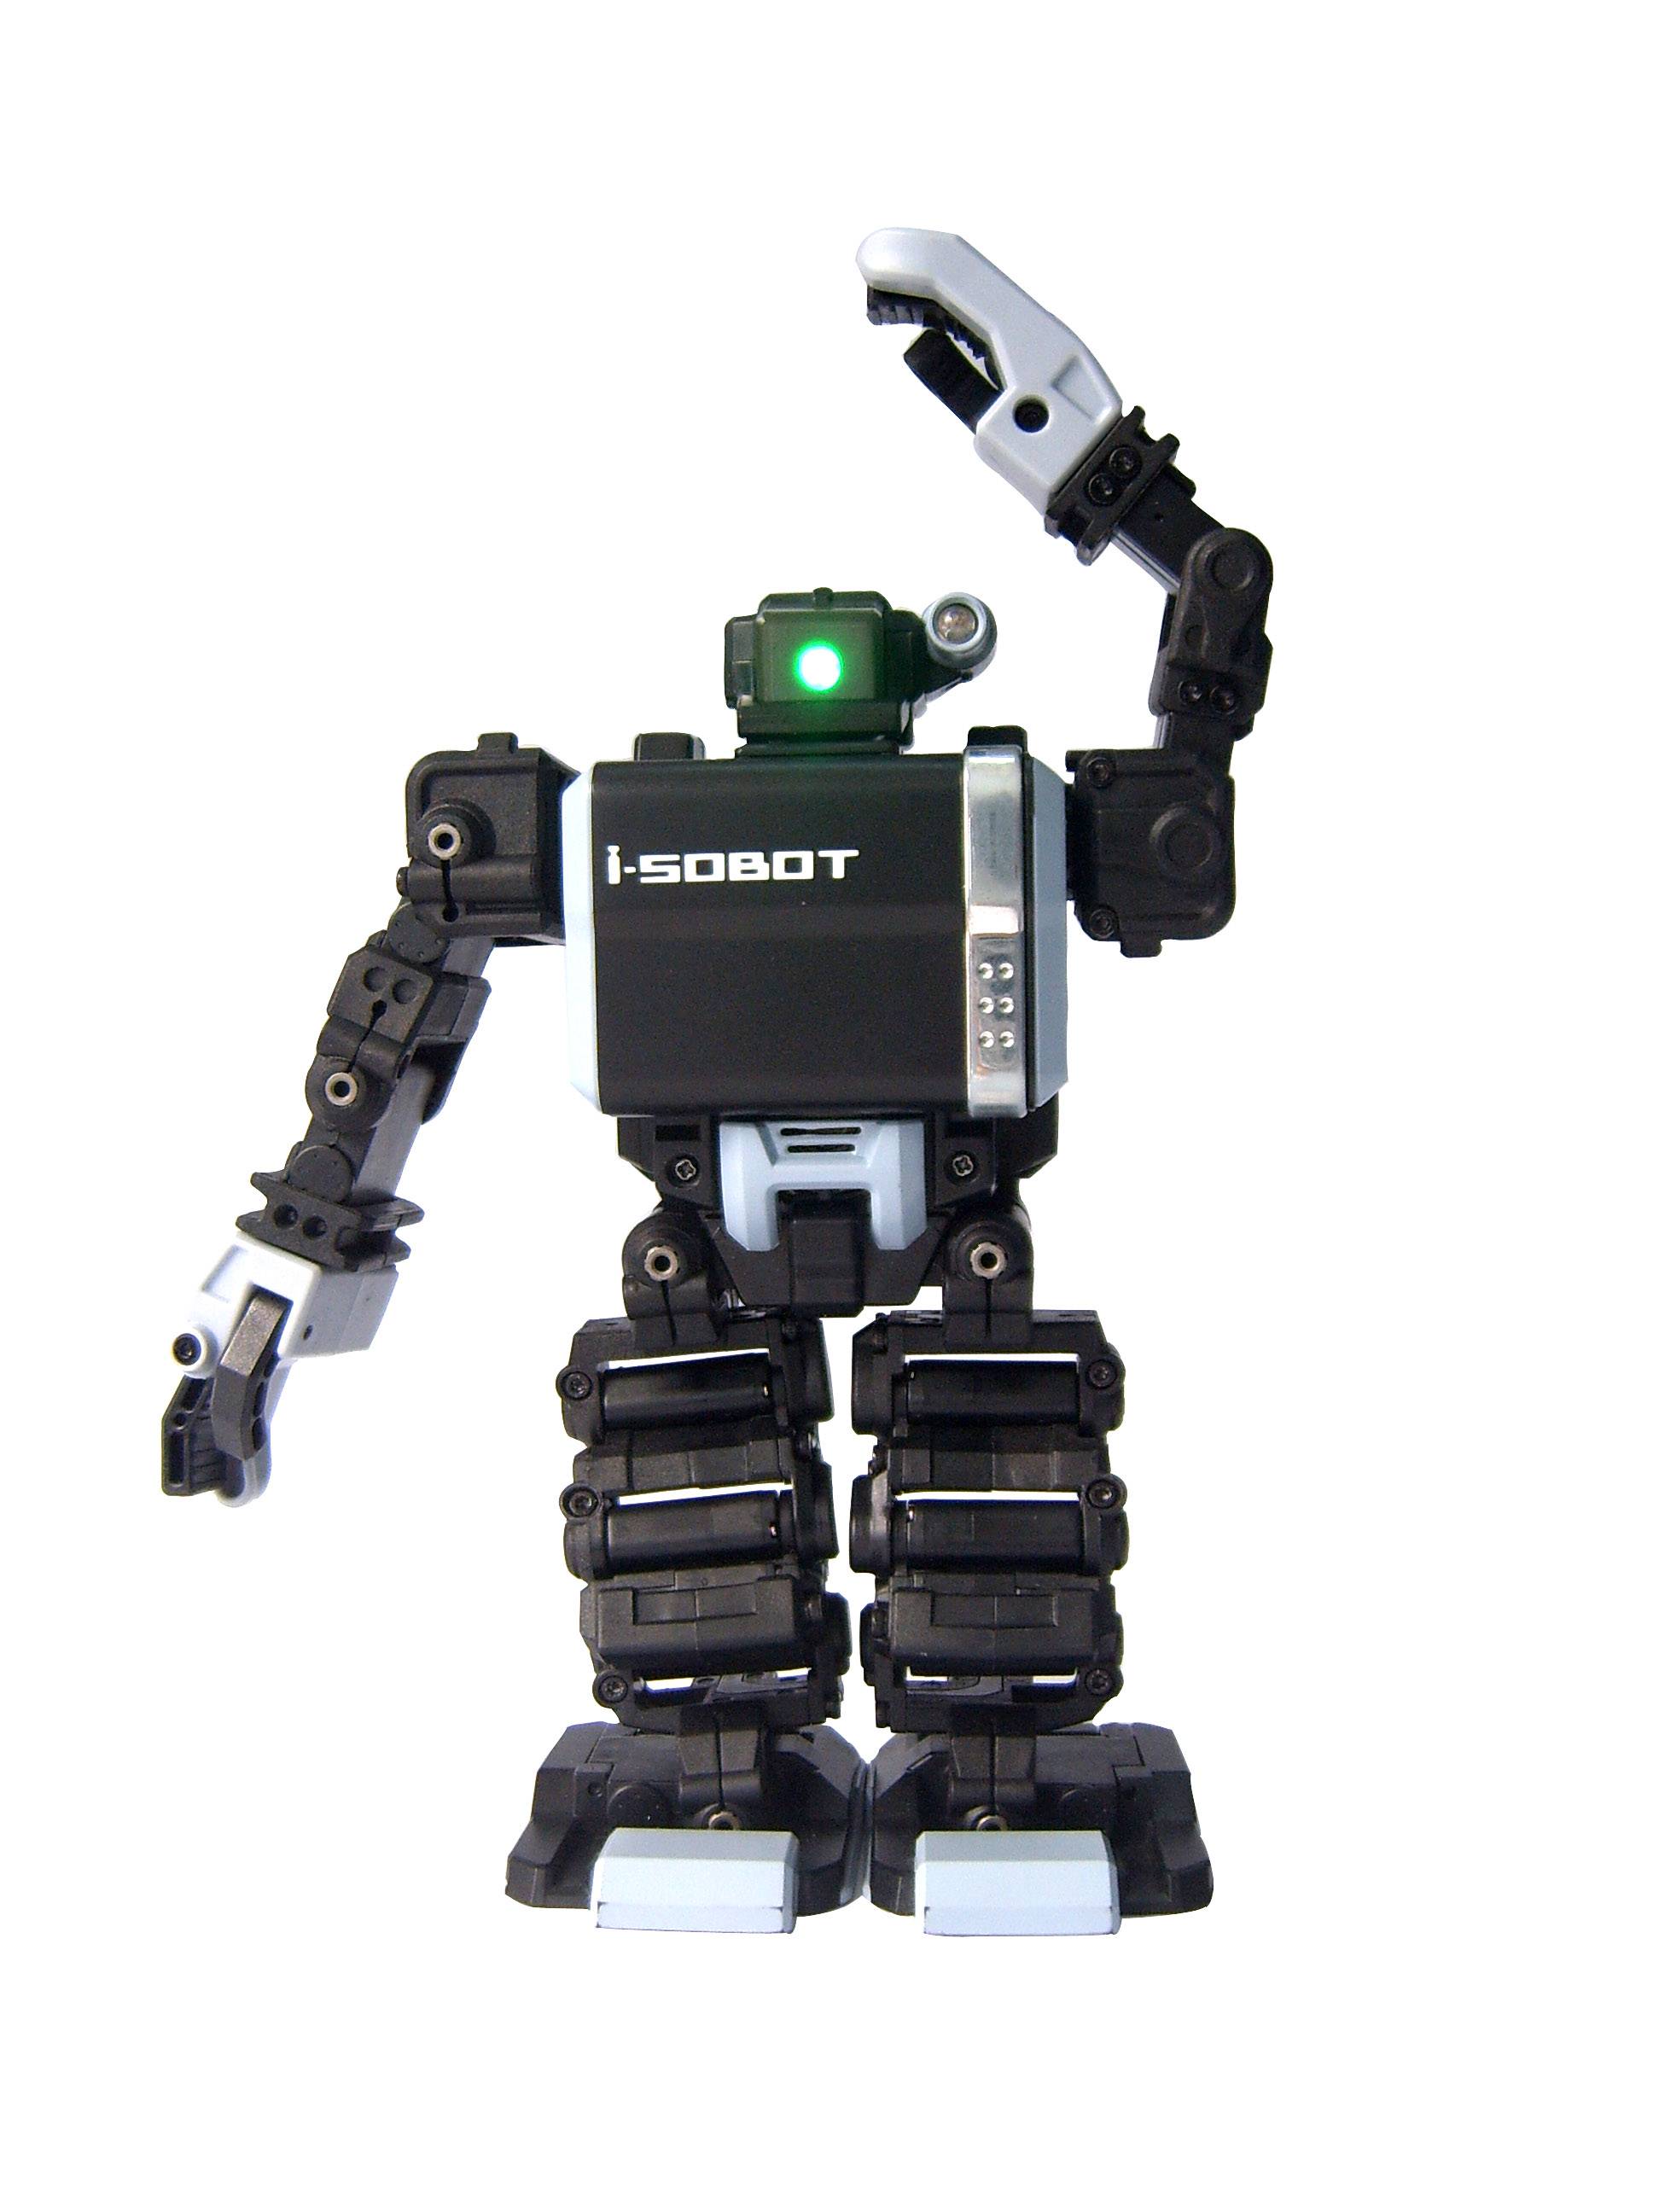 i-sobot robot - Dongguan BDS Technology Co.ltd